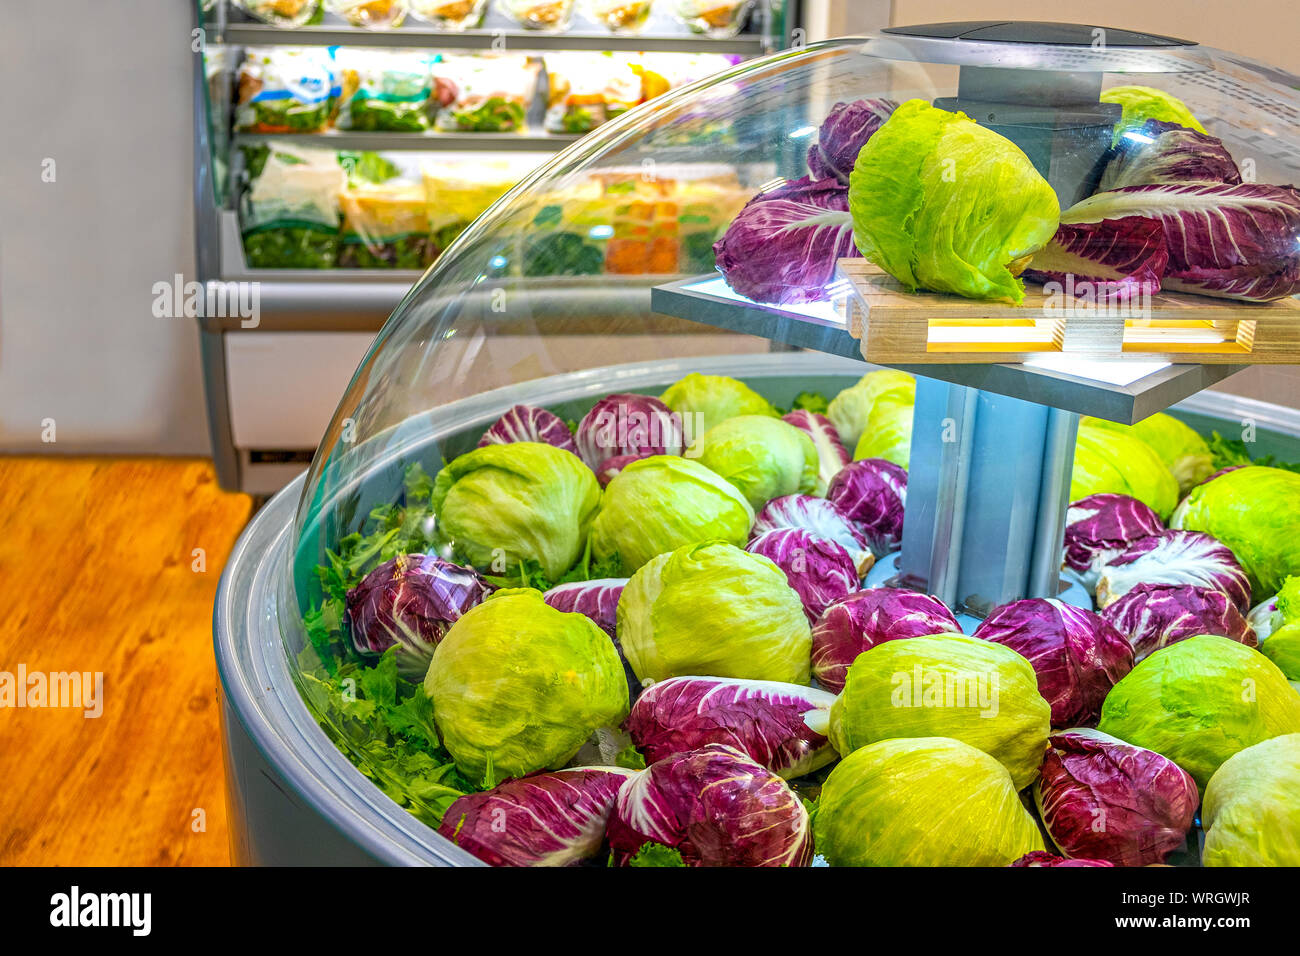 Mercato ortofrutticolo frigorifero insalata di lattuga al supermercato Foto Stock